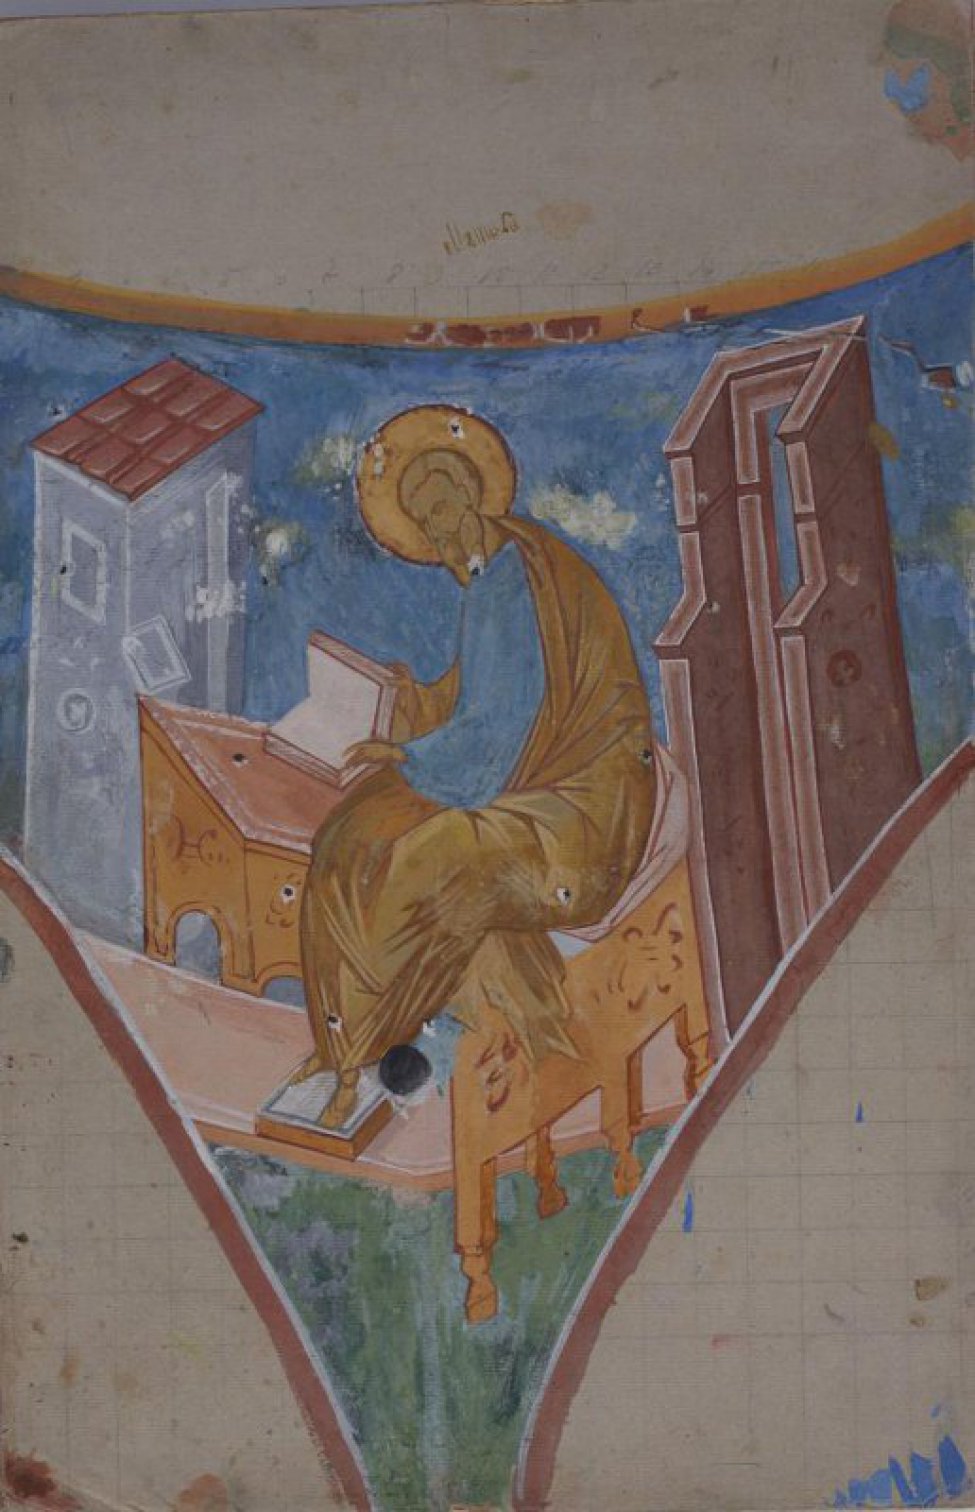 Изображен сидящий святитель в коричнево-желтом хитоне с книгой в руках.